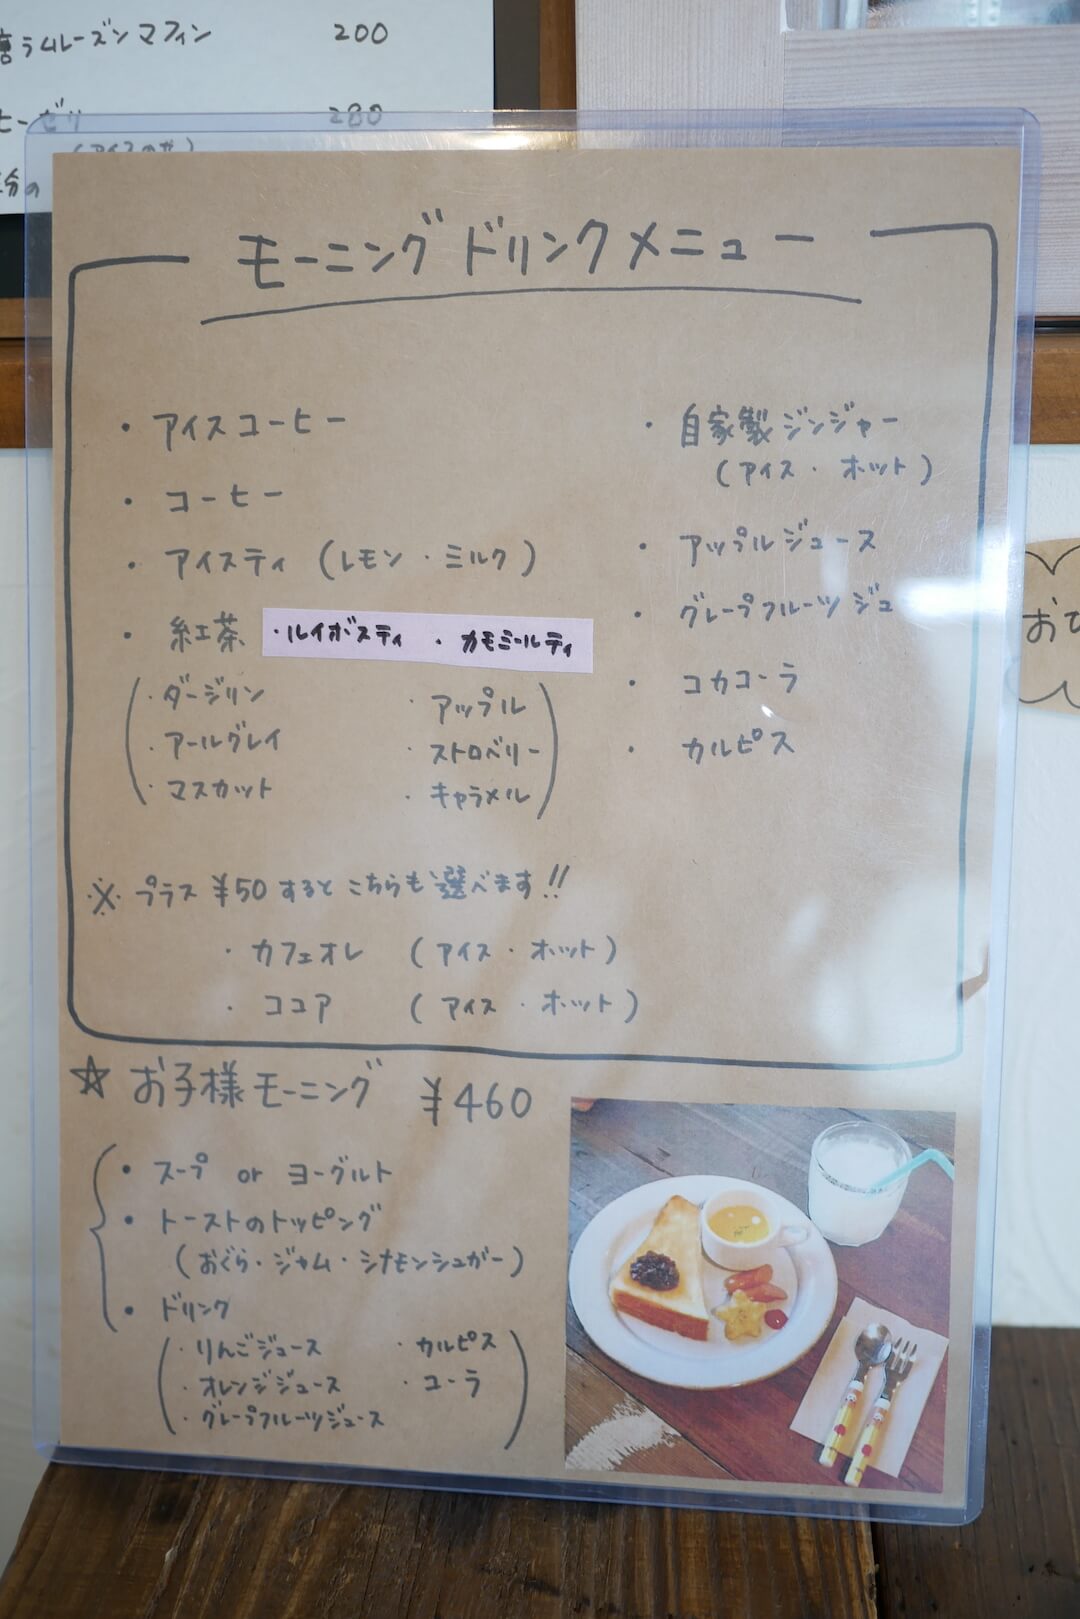 【岐阜県不破郡垂井町】Sucre（シュクル）カフェ cafe モーニングプレート 14時まで カントリー かわいい 雑貨